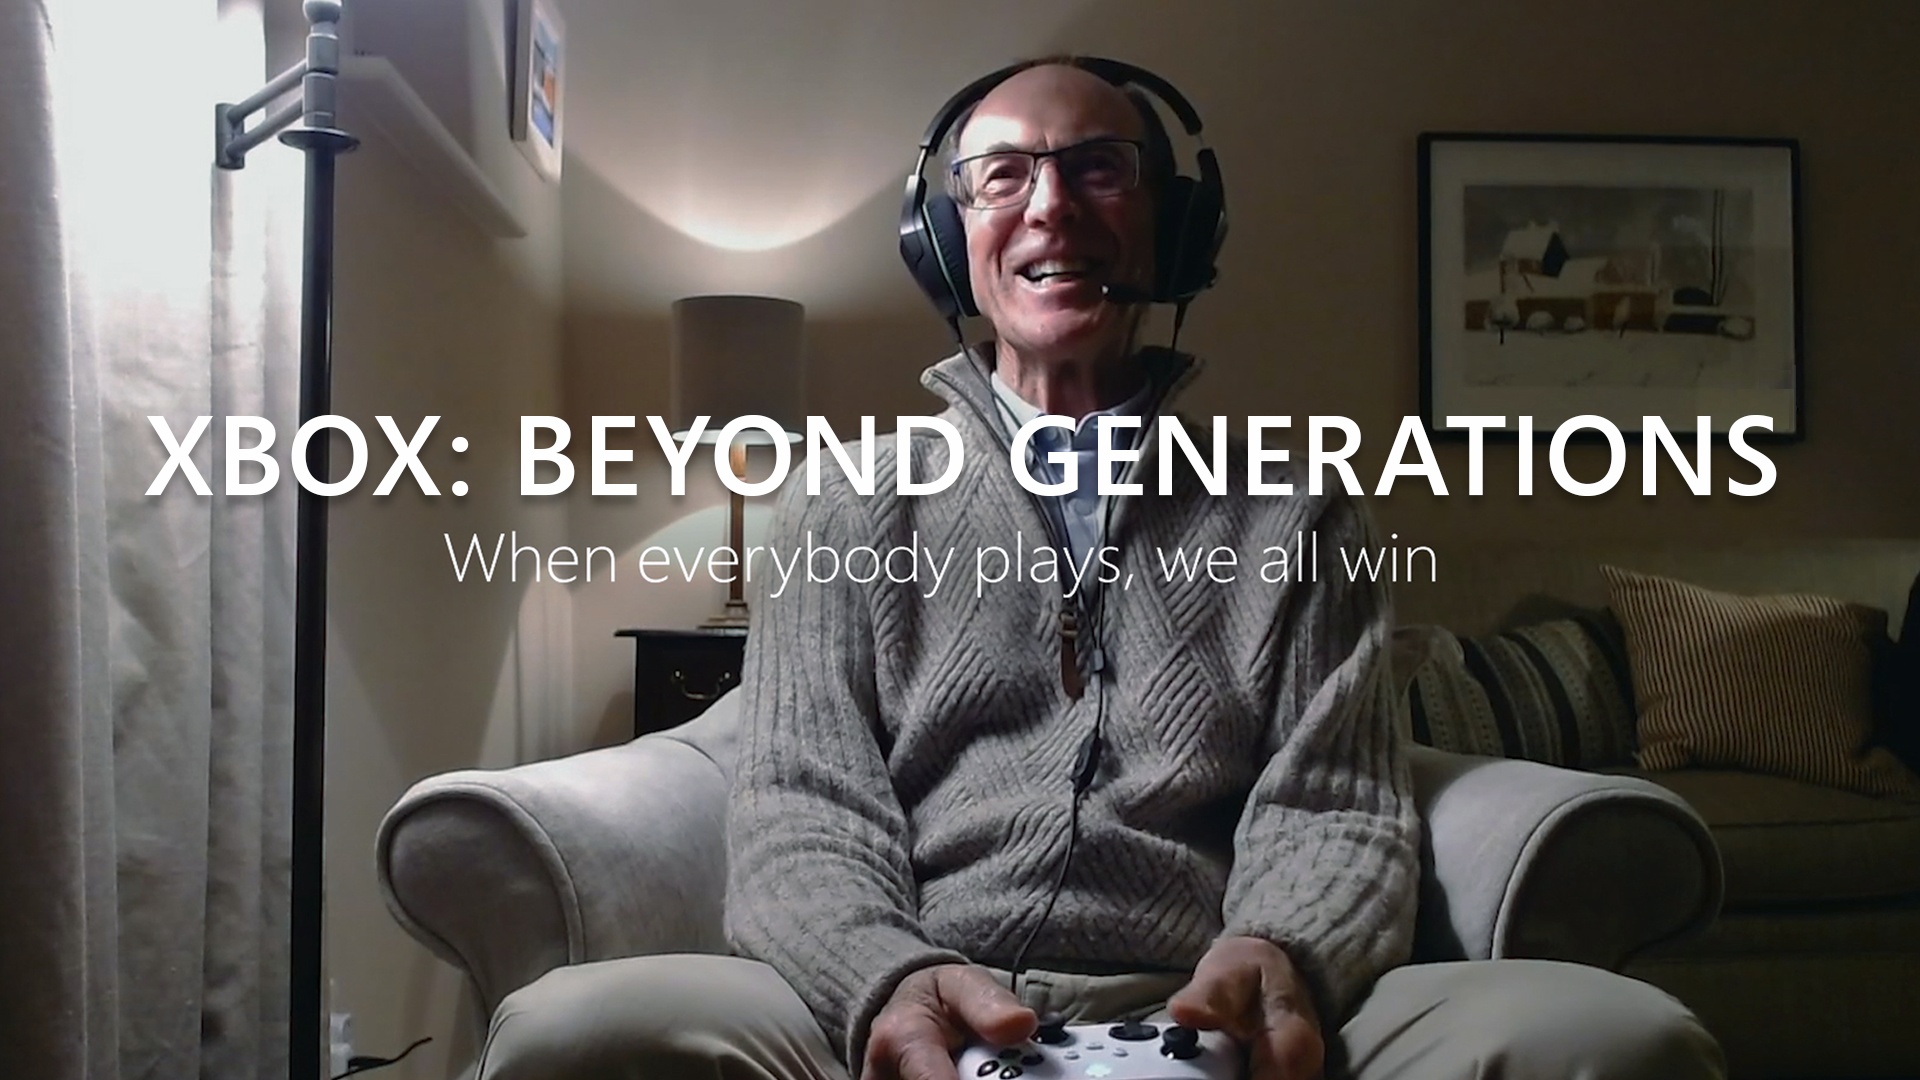 Video For Xbox: Beyond Generations zeigt wie Videospiele Generationen verbinden